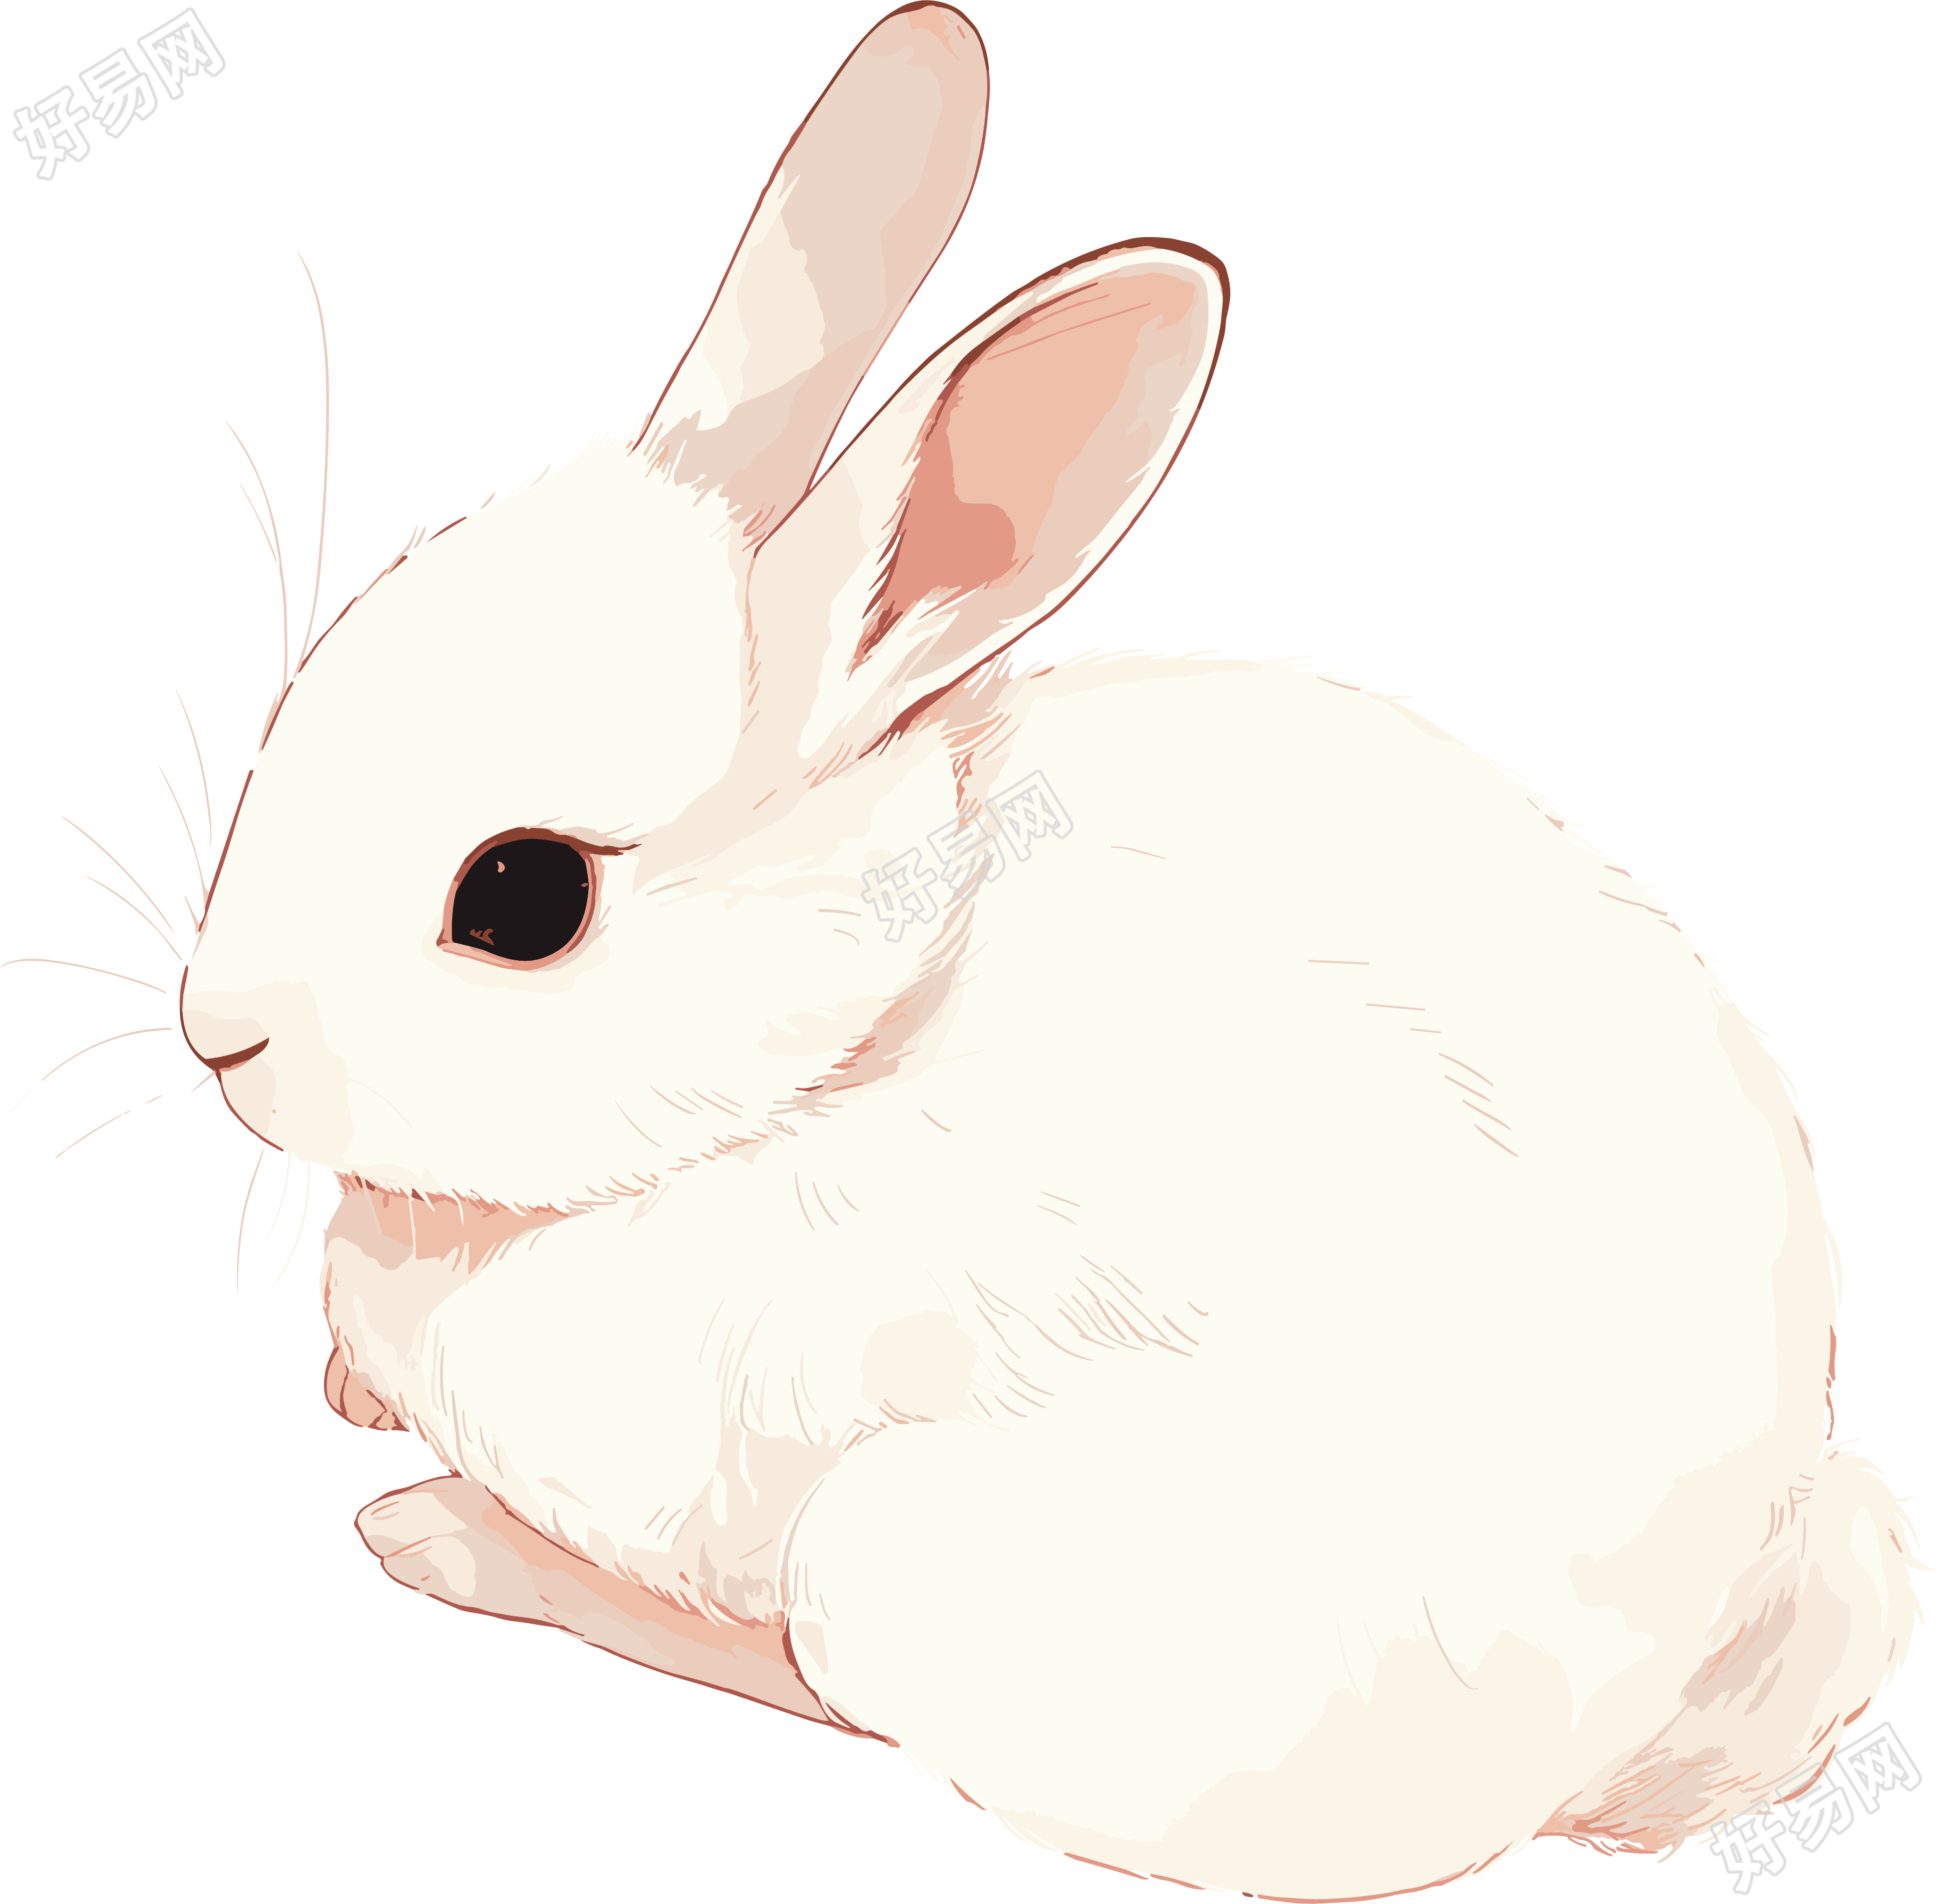 兔子矢量插画